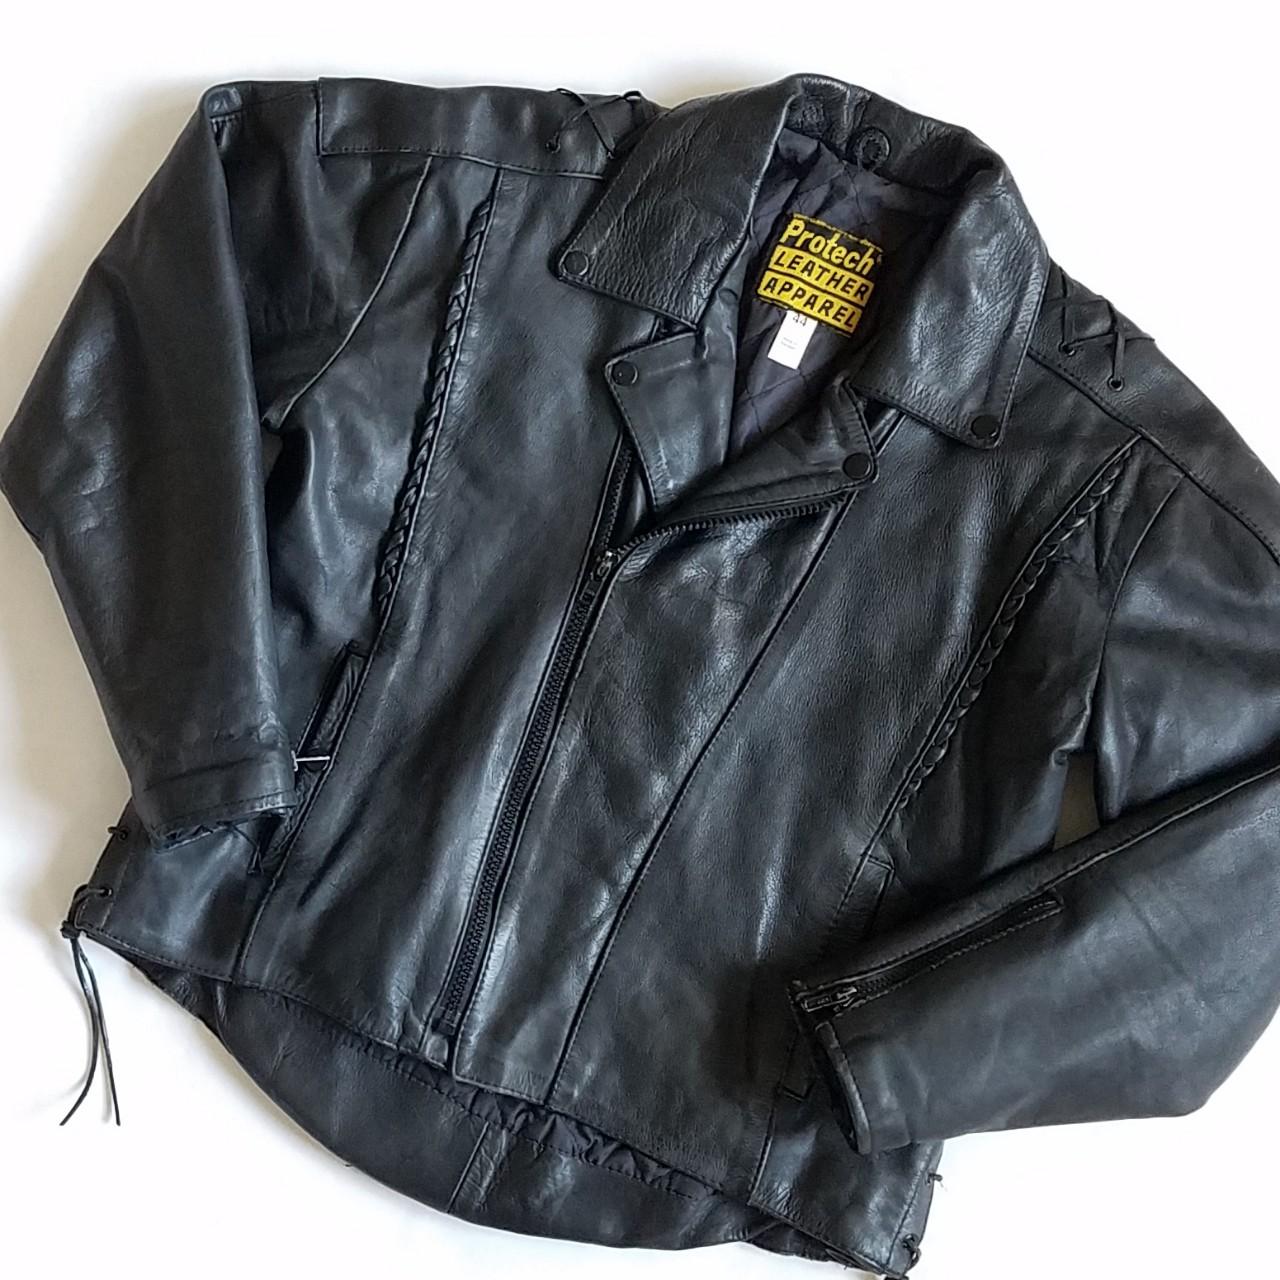 Brand: Protech Leather Apparel (Vintage 80s Biker - Depop